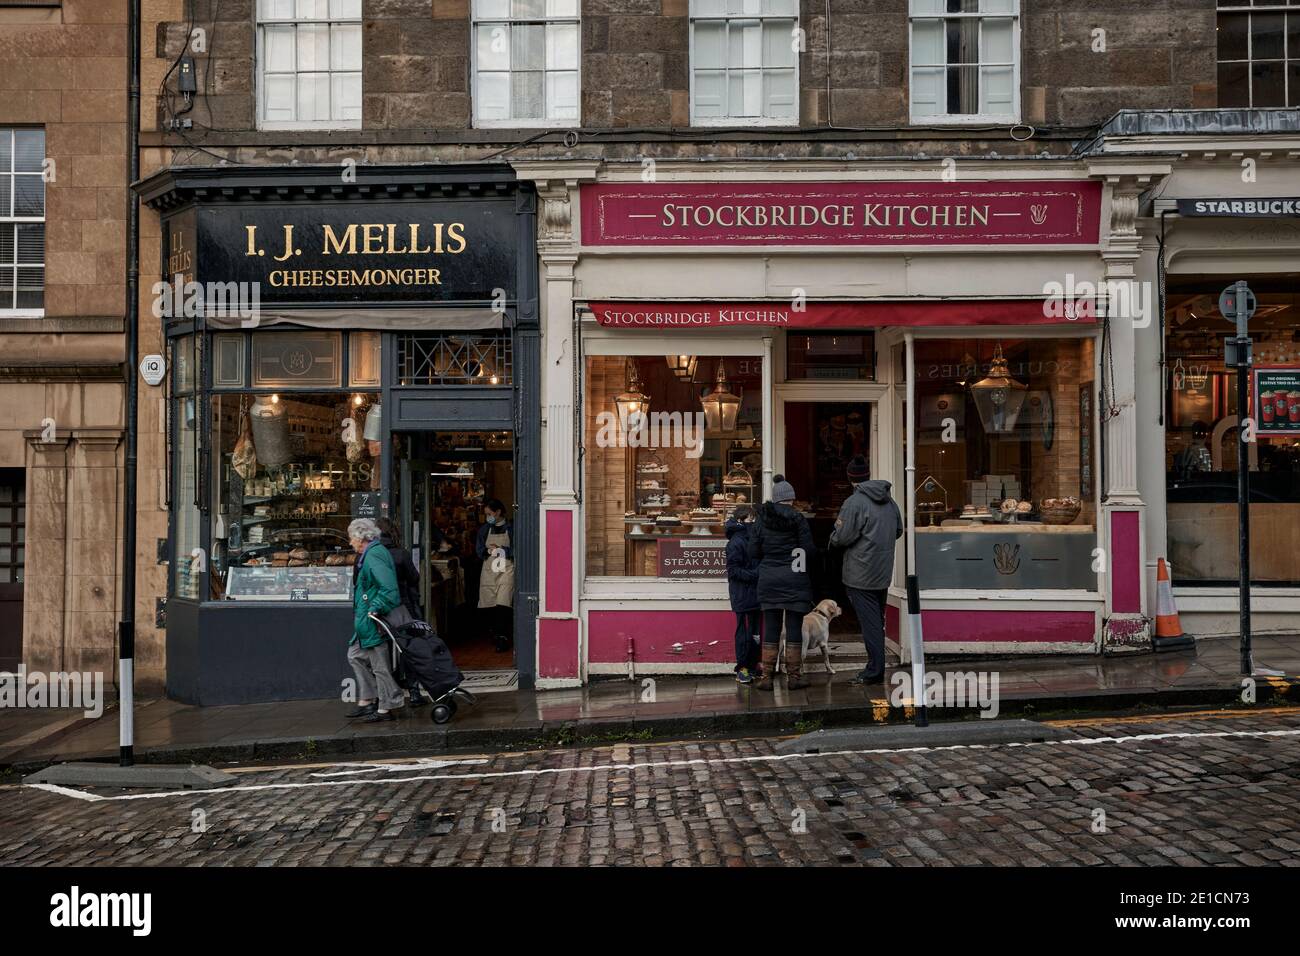 I.J Mellis Cheese Monger shop, Stockbridge, Classic shop front. Édimbourg hiver de 2020. Banque D'Images